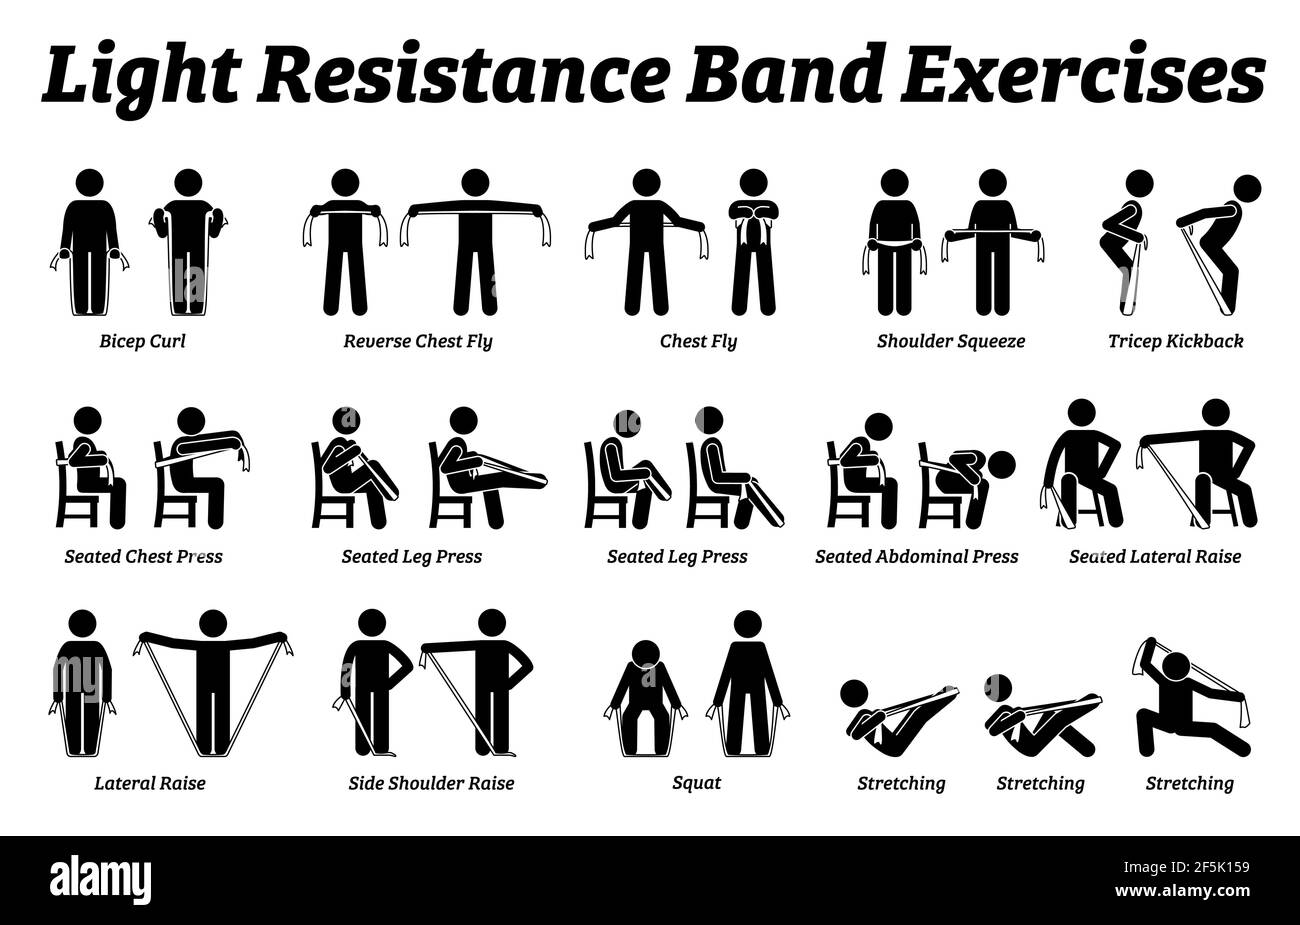 Light Resistance Band Übungen und Stretch-Workout-Techniken in Schritt für  Schritt. Vektor-Illustrationen von Dehnübungen Posen, Haltungen und Meth  Stock-Vektorgrafik - Alamy